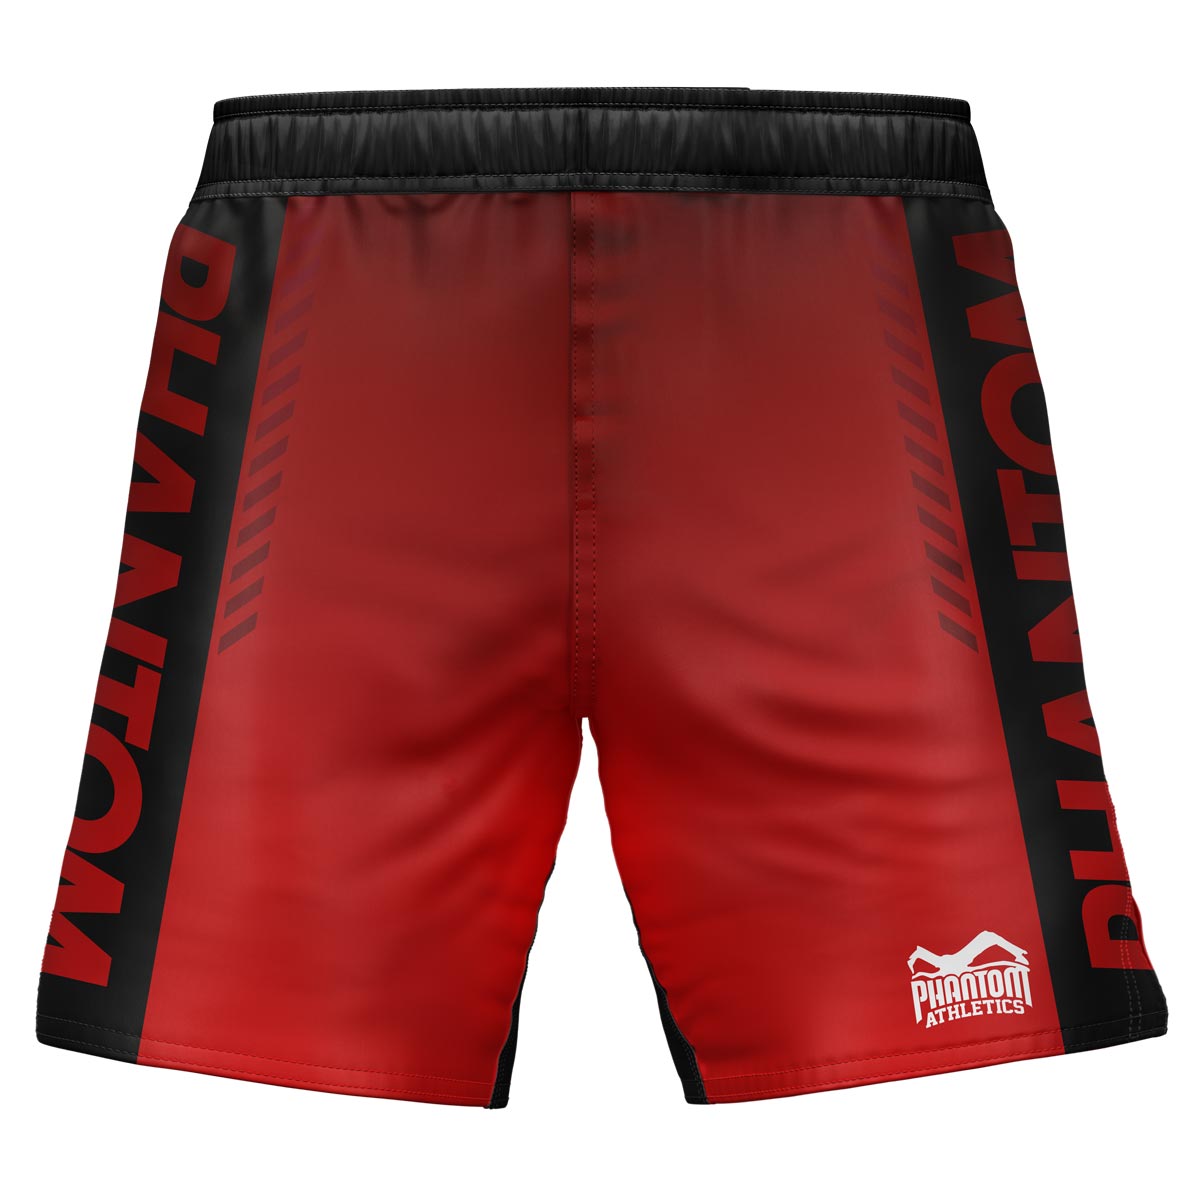 Pantalones cortos de lucha Phantom MMA en la edición RED limitada. Ultra flexible y resistente al desgarro. Ideal para MMA, lucha libre, BJJ, K1 o boxeo tailandés.